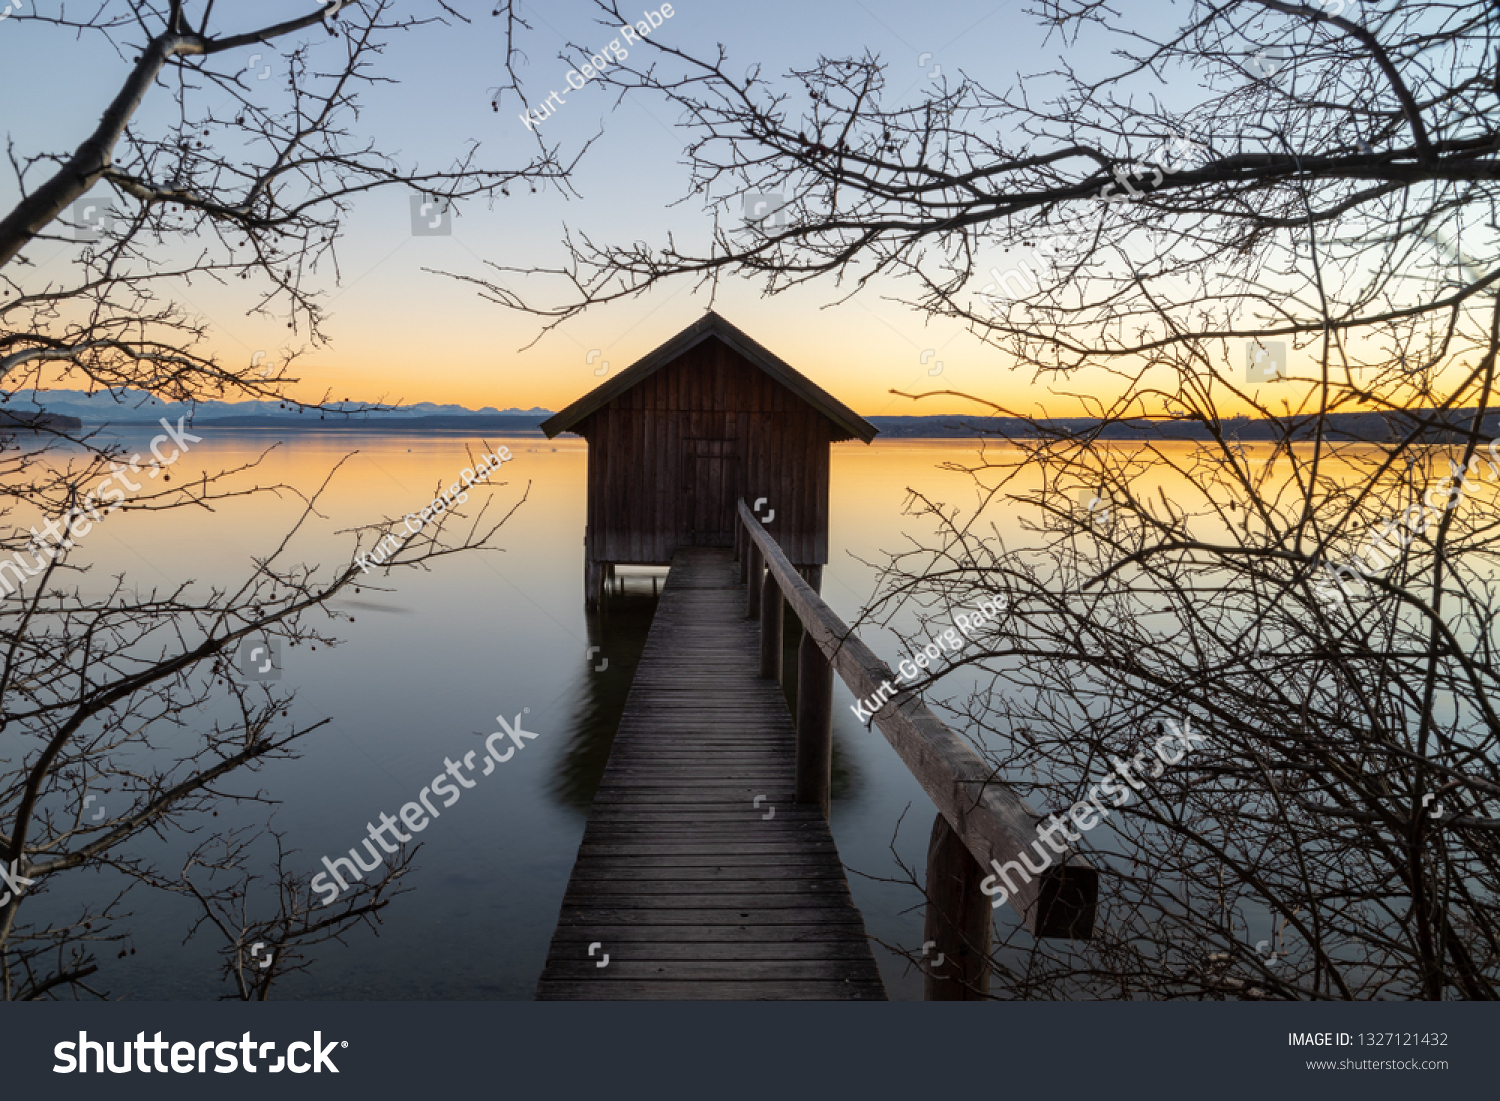 A boatshouse at a lake at sunset #1327121432